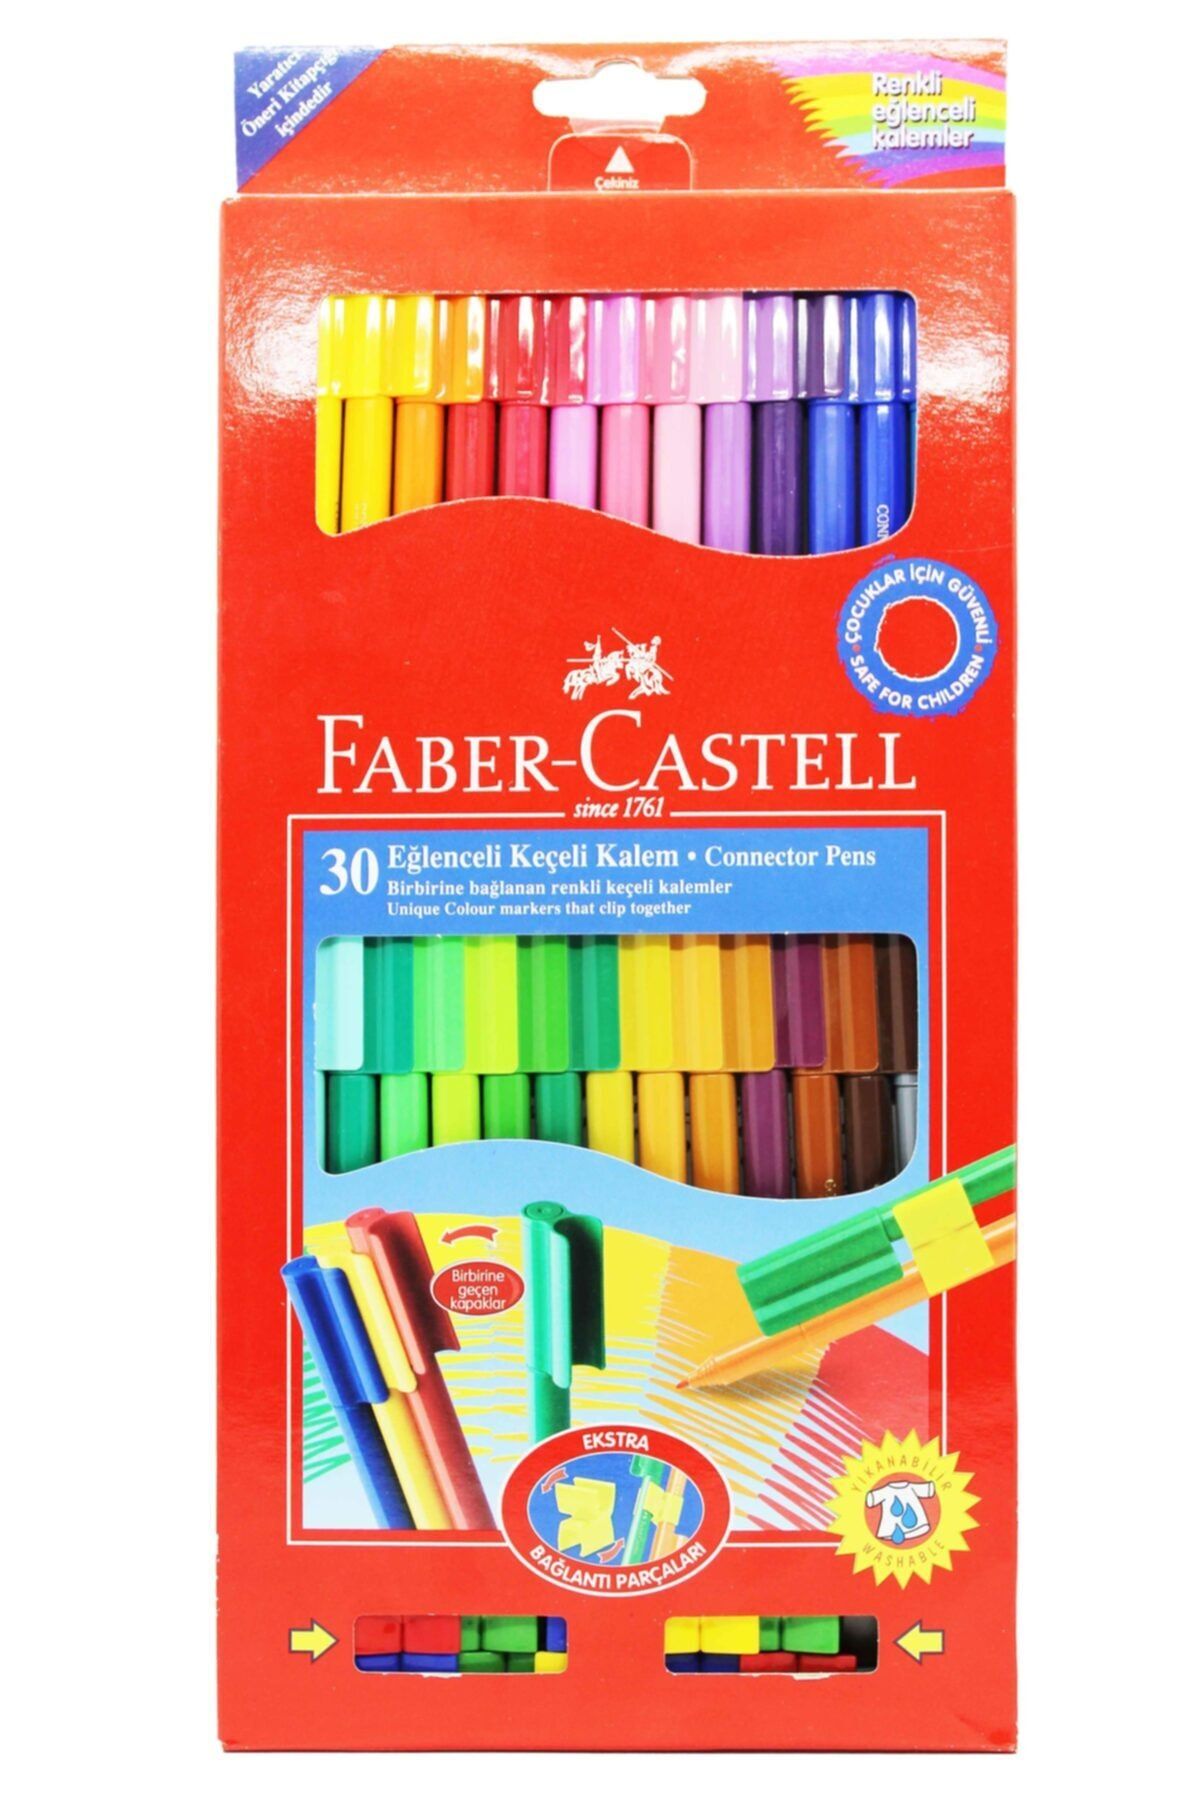 Faber Castell Eğlenceli Keçeli Kalem Seti 30 Renk